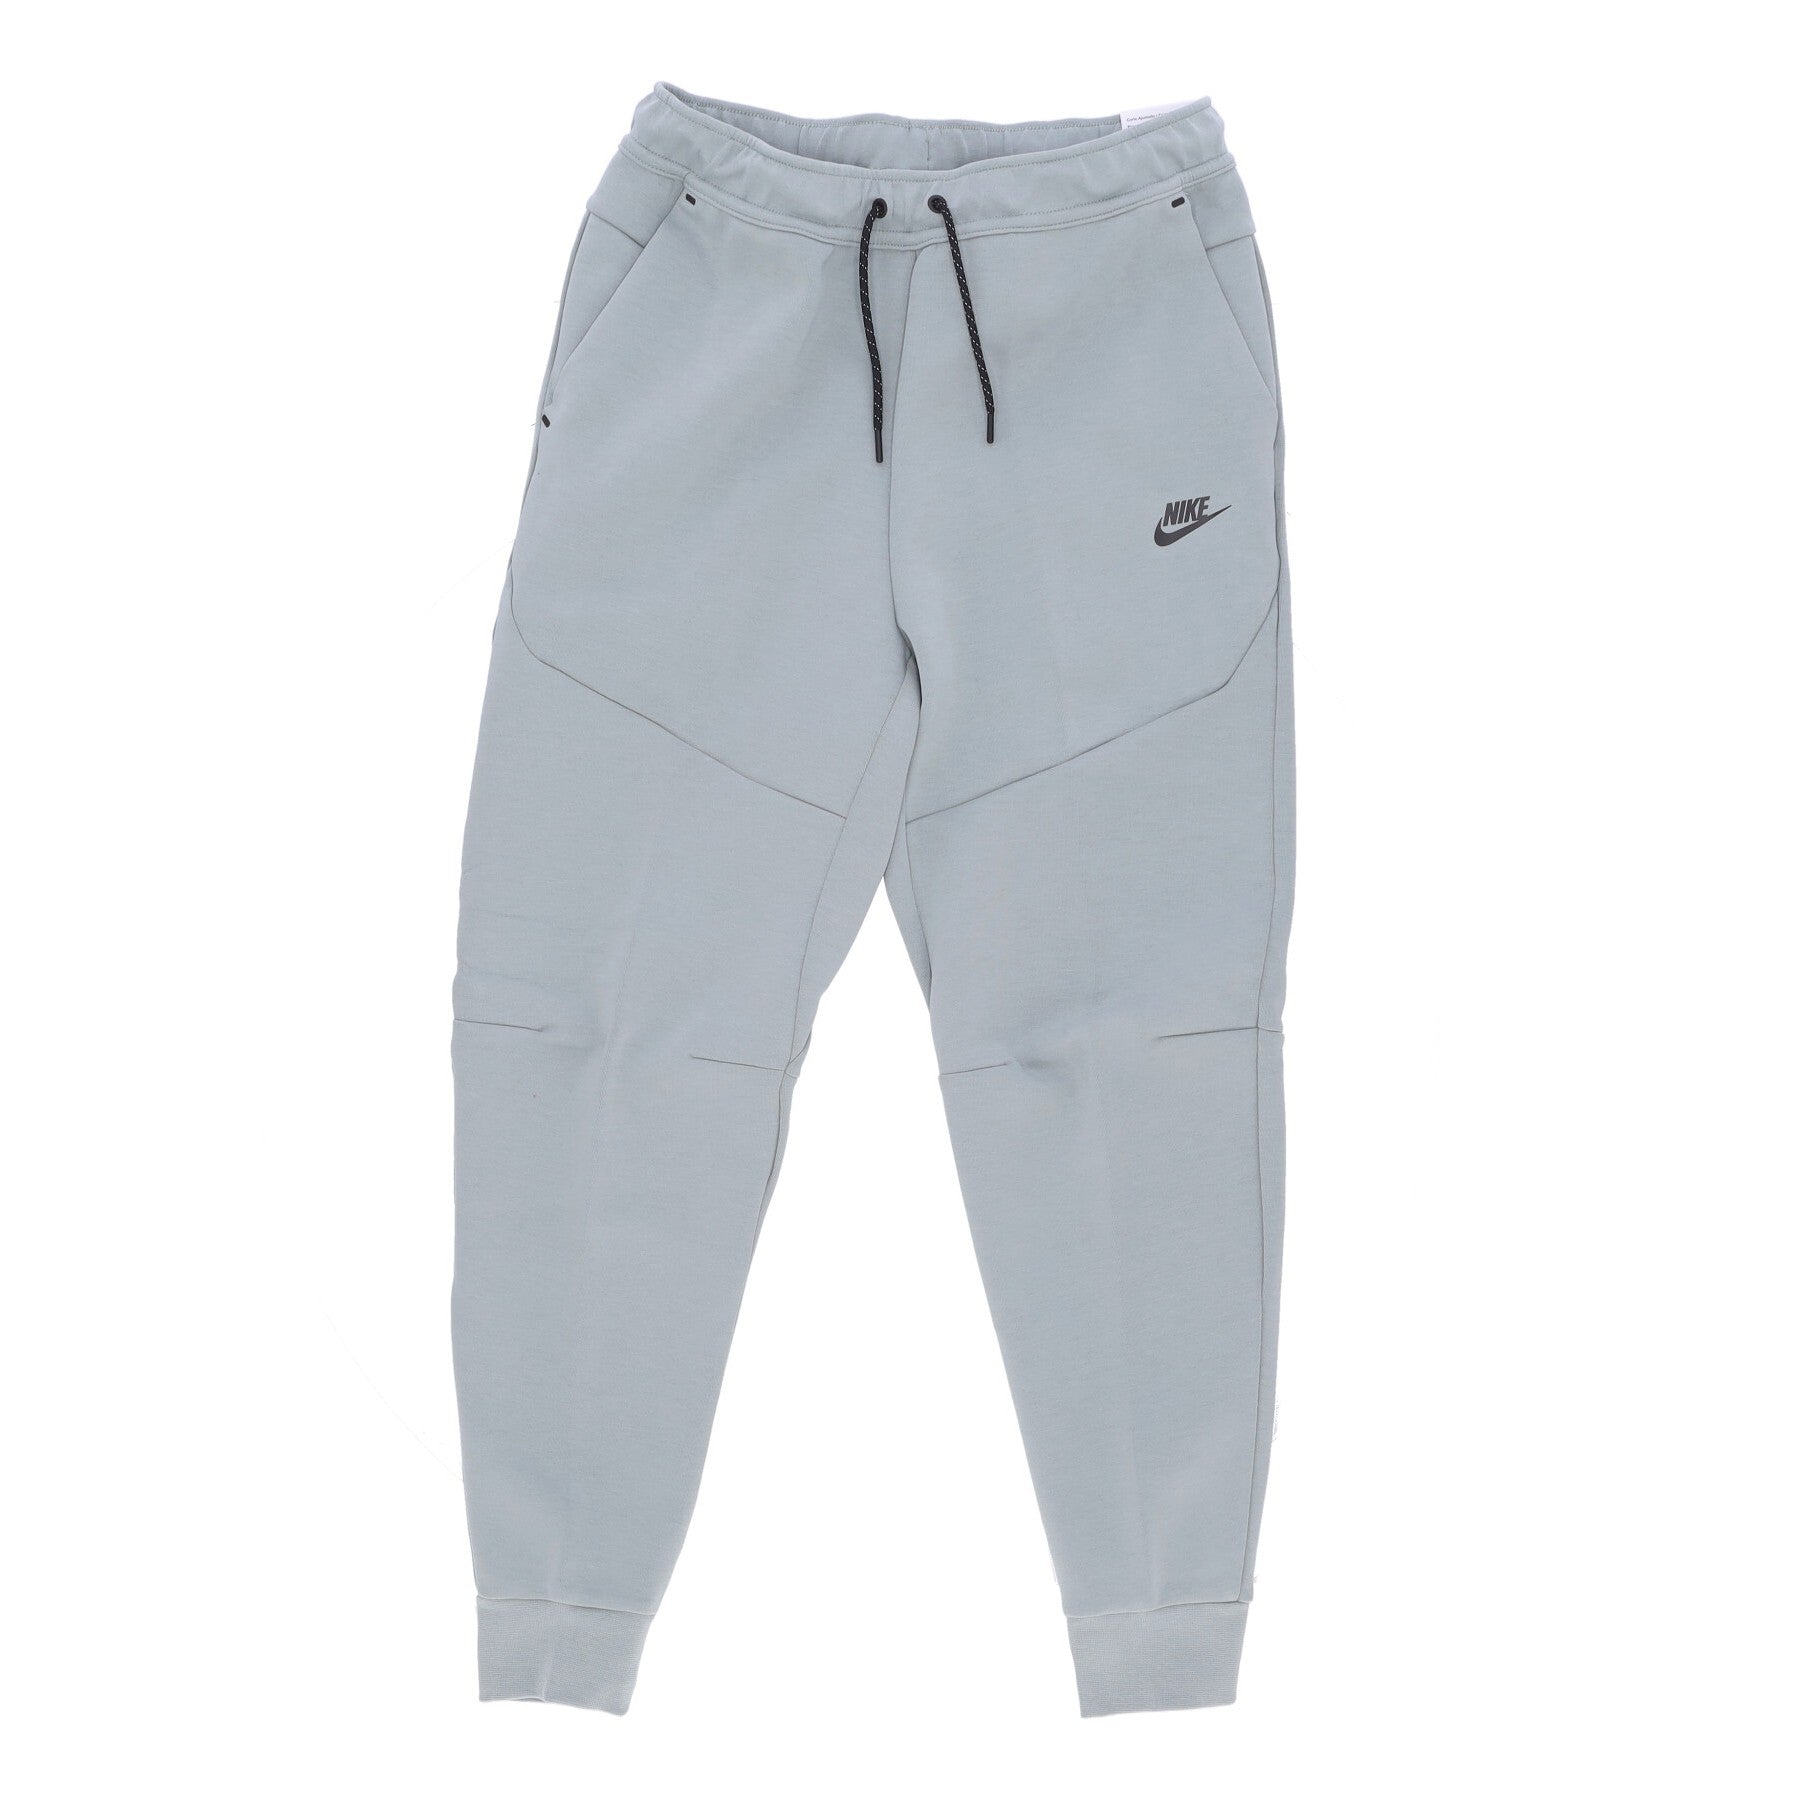 Nike, Pantalone Tuta Leggero Uomo Sportswear Tech Fleece Pant, Mica Green/black